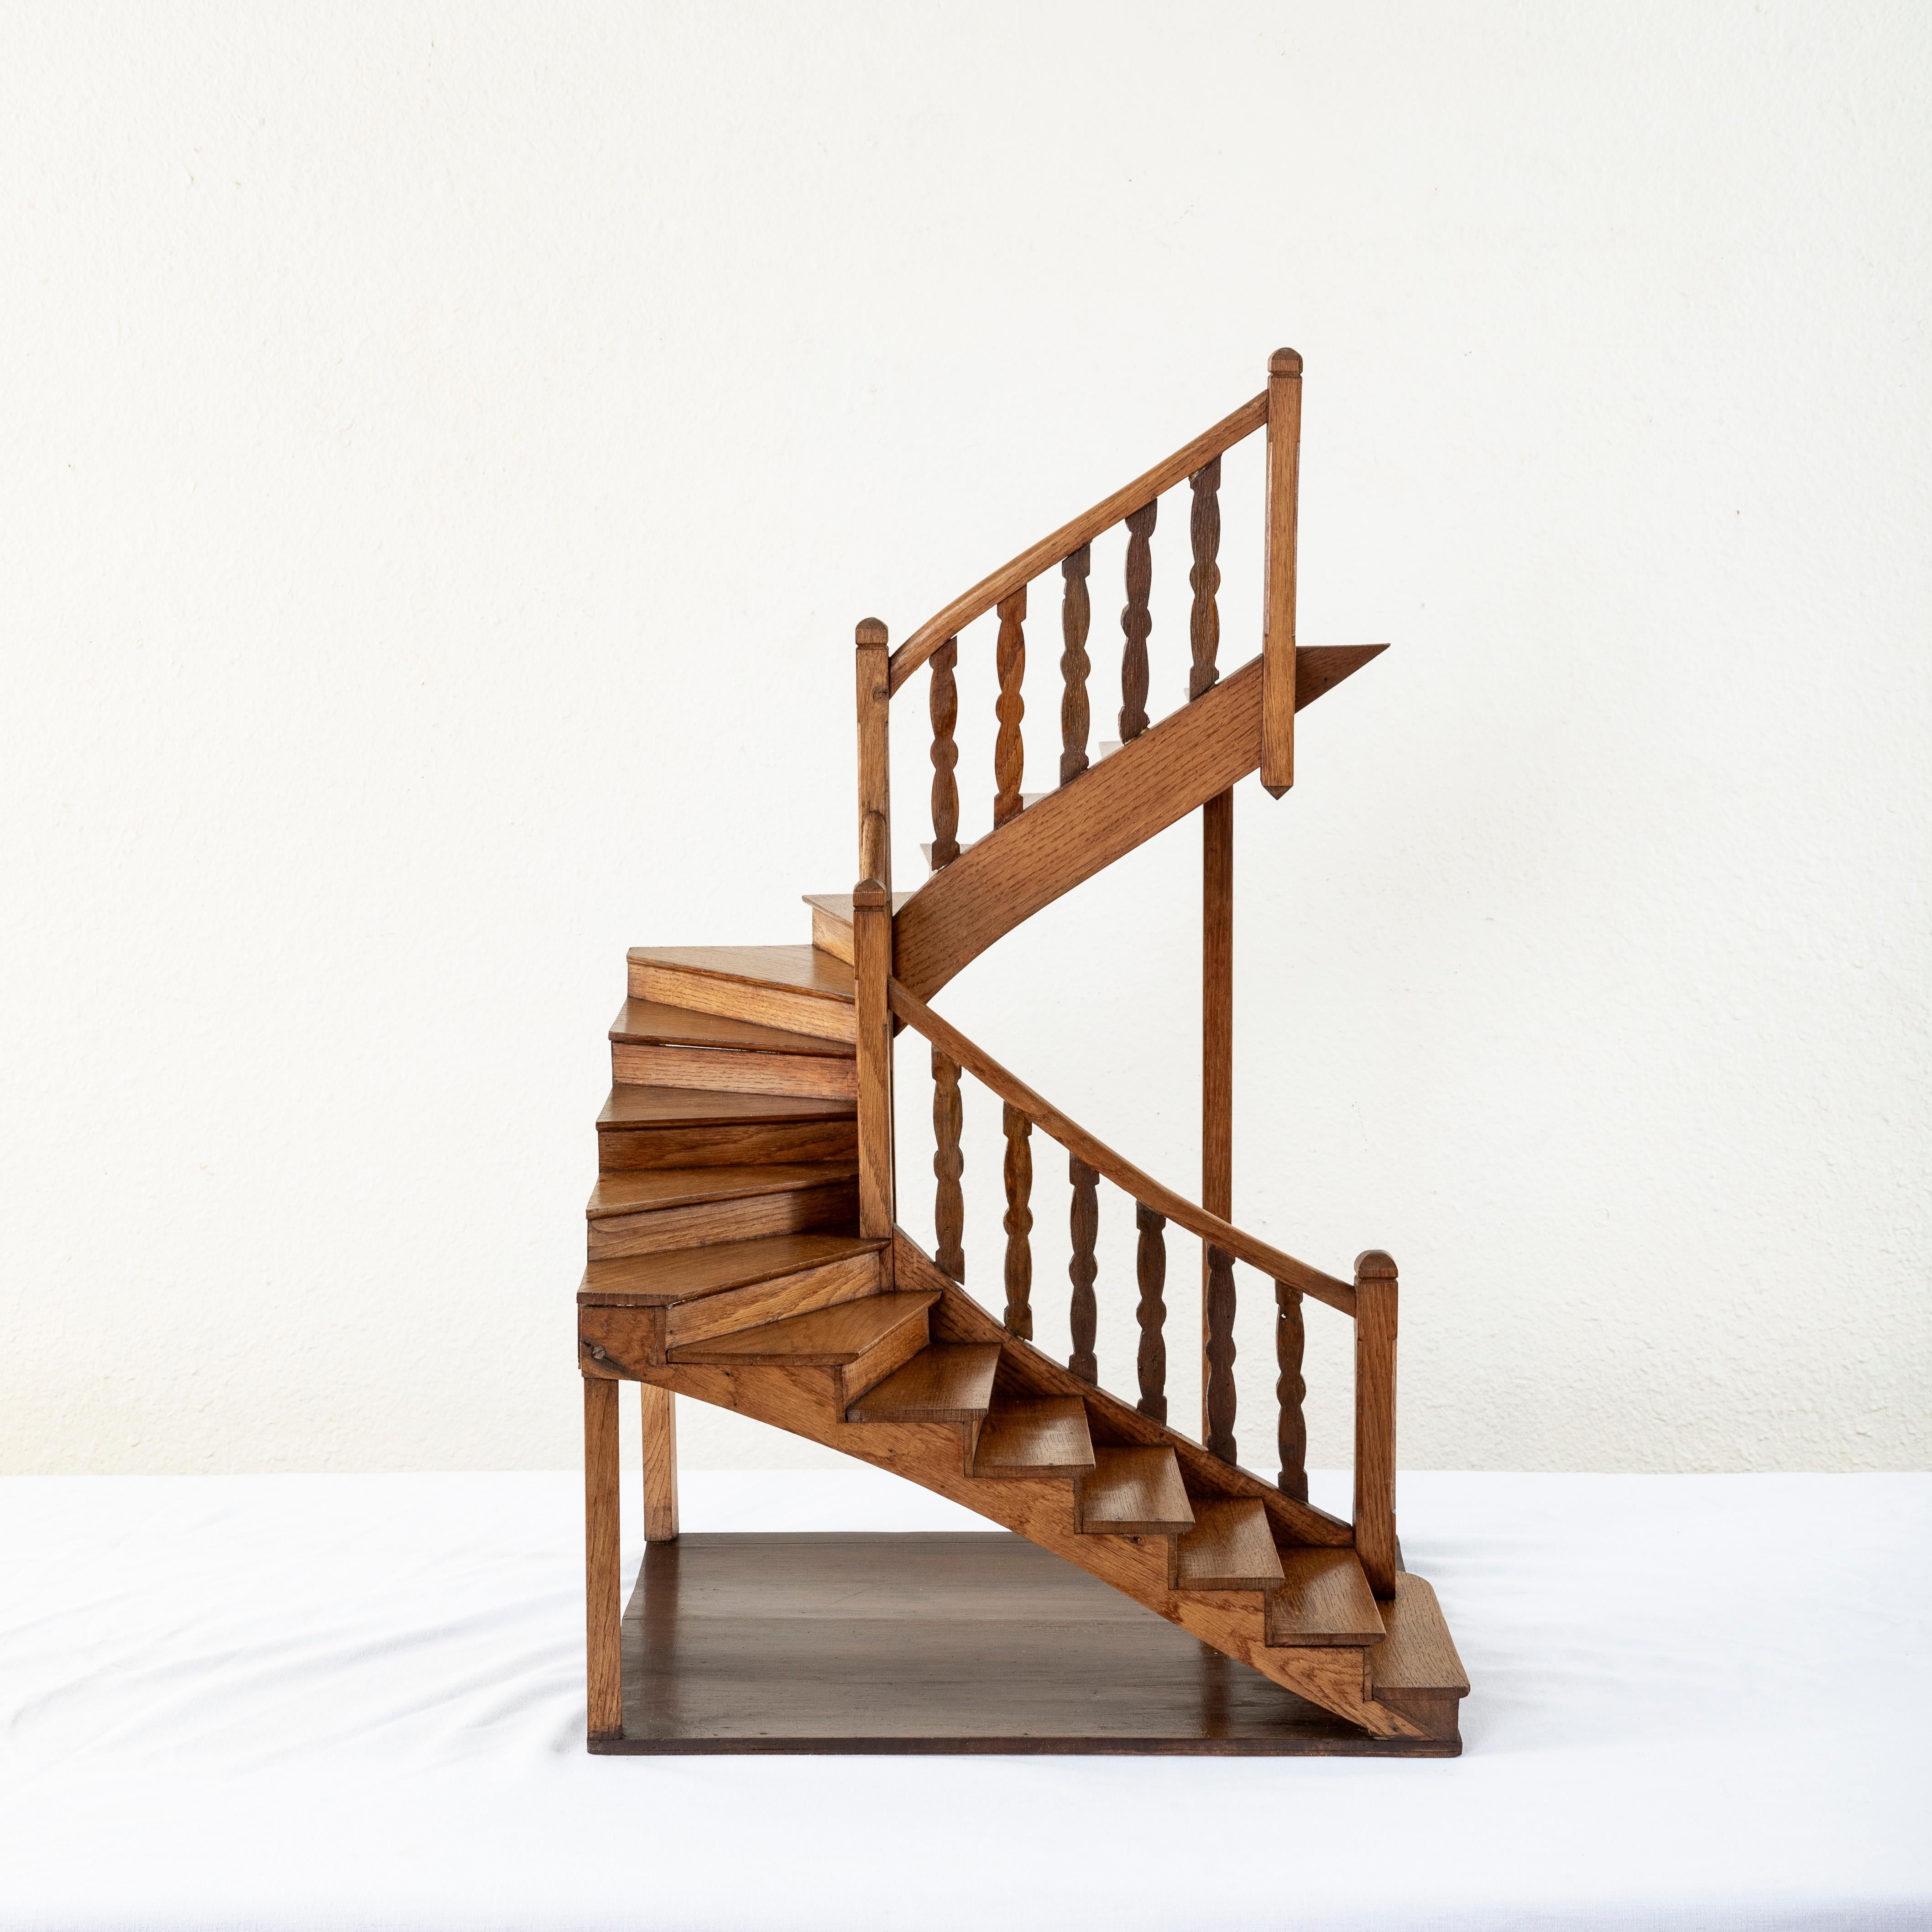 Cet escalier en chêne massif de modèle français est une rareté. Réalisé par l'architecte pour illustrer la conception de l'escalier à l'échelle réelle, ce modèle à grande échelle inhabituel datant du début du XXe siècle se présente magnifiquement